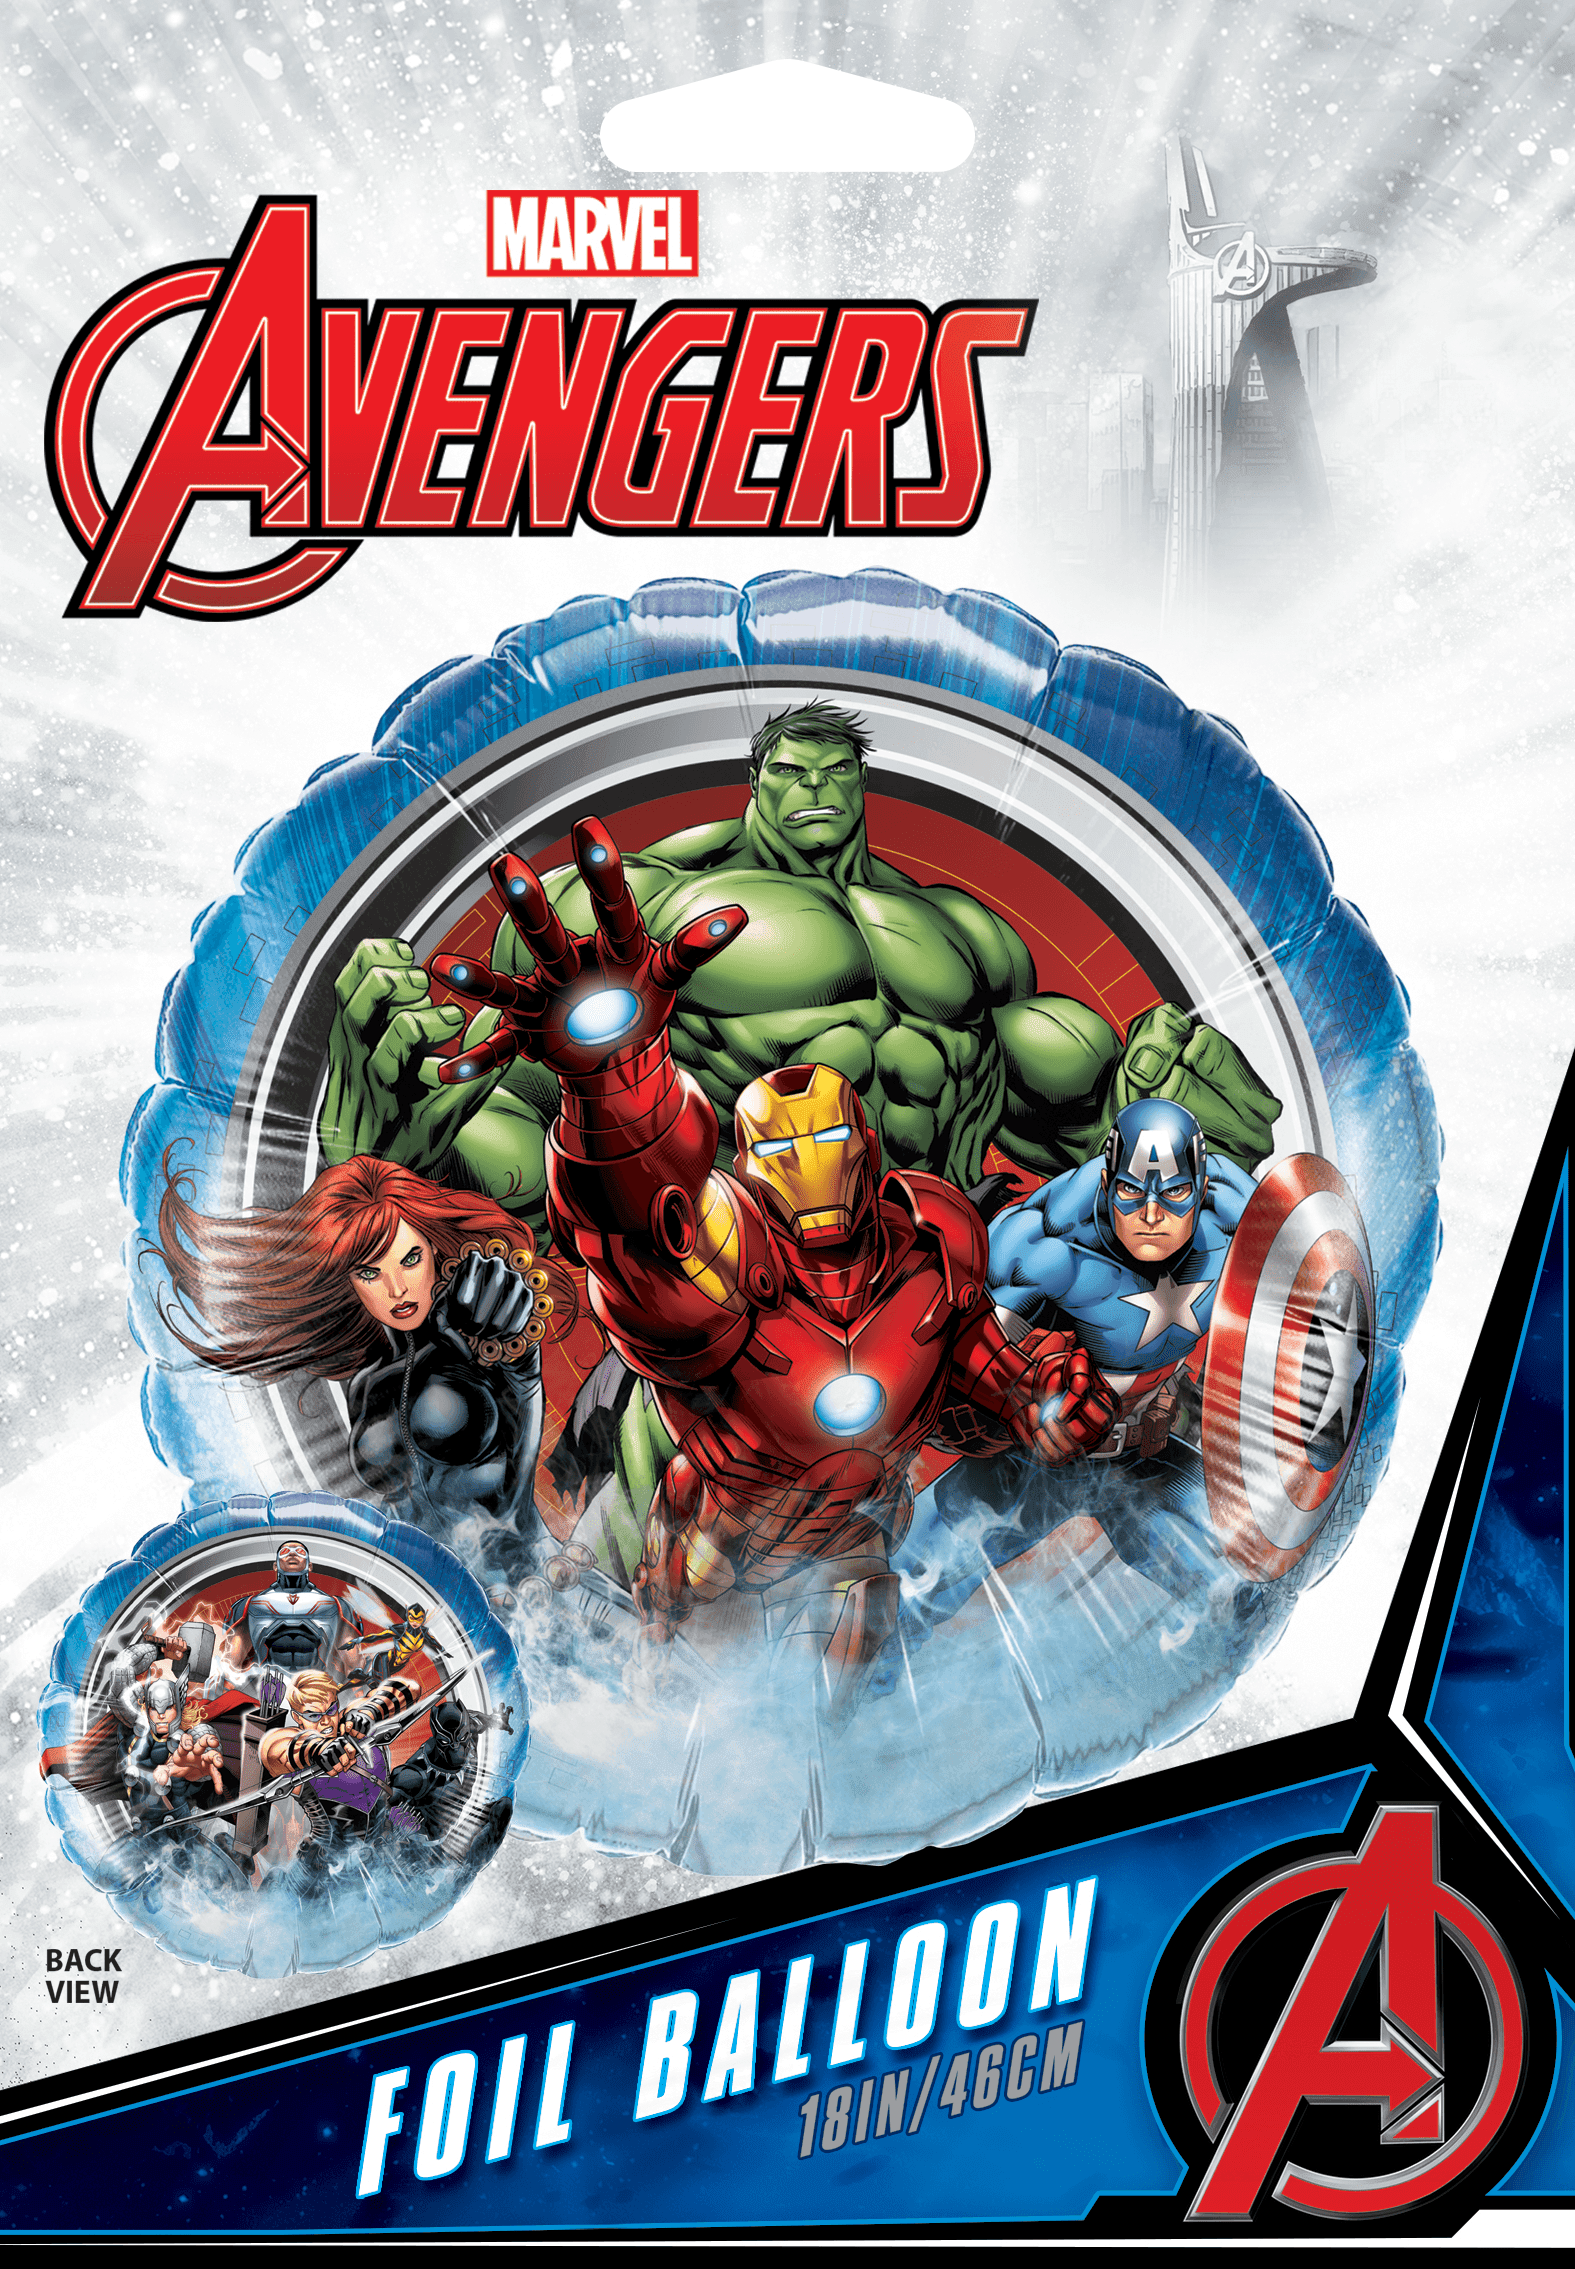 Ballon Spiderman - 6 ans - 7 Pièces - Marvel Avengers - Décoration